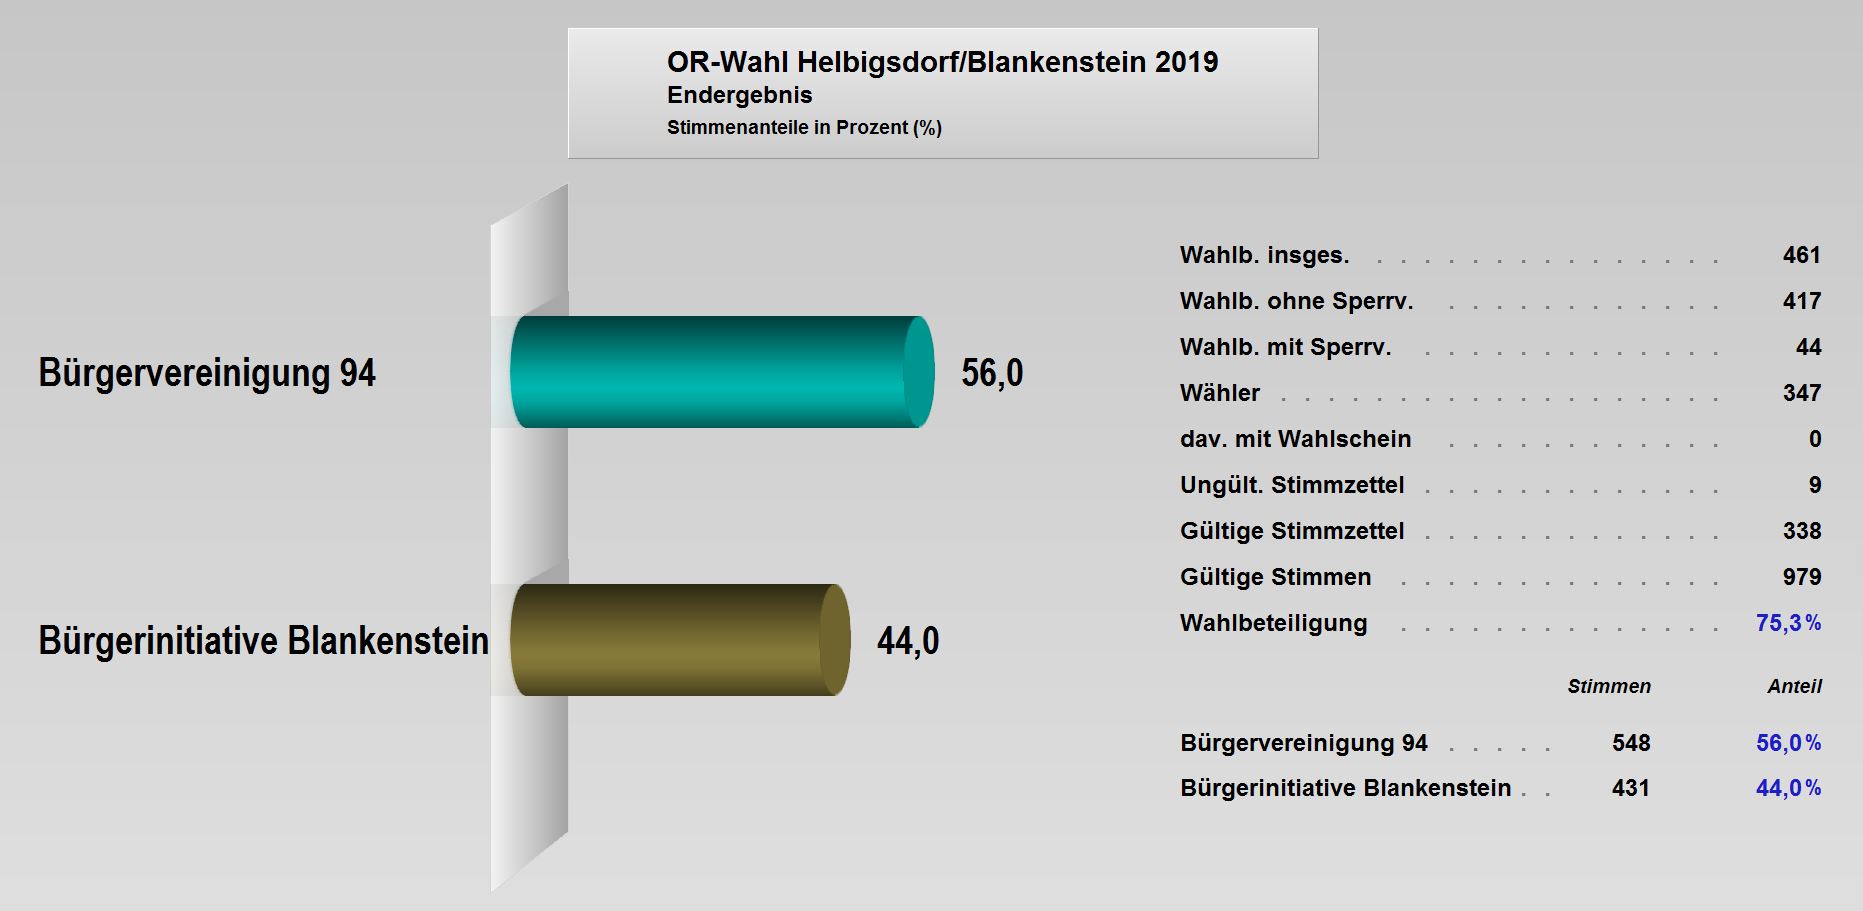 OR-Wahl_2019_Endergebnis_Helbigsdorf_Blankenstein.JPG